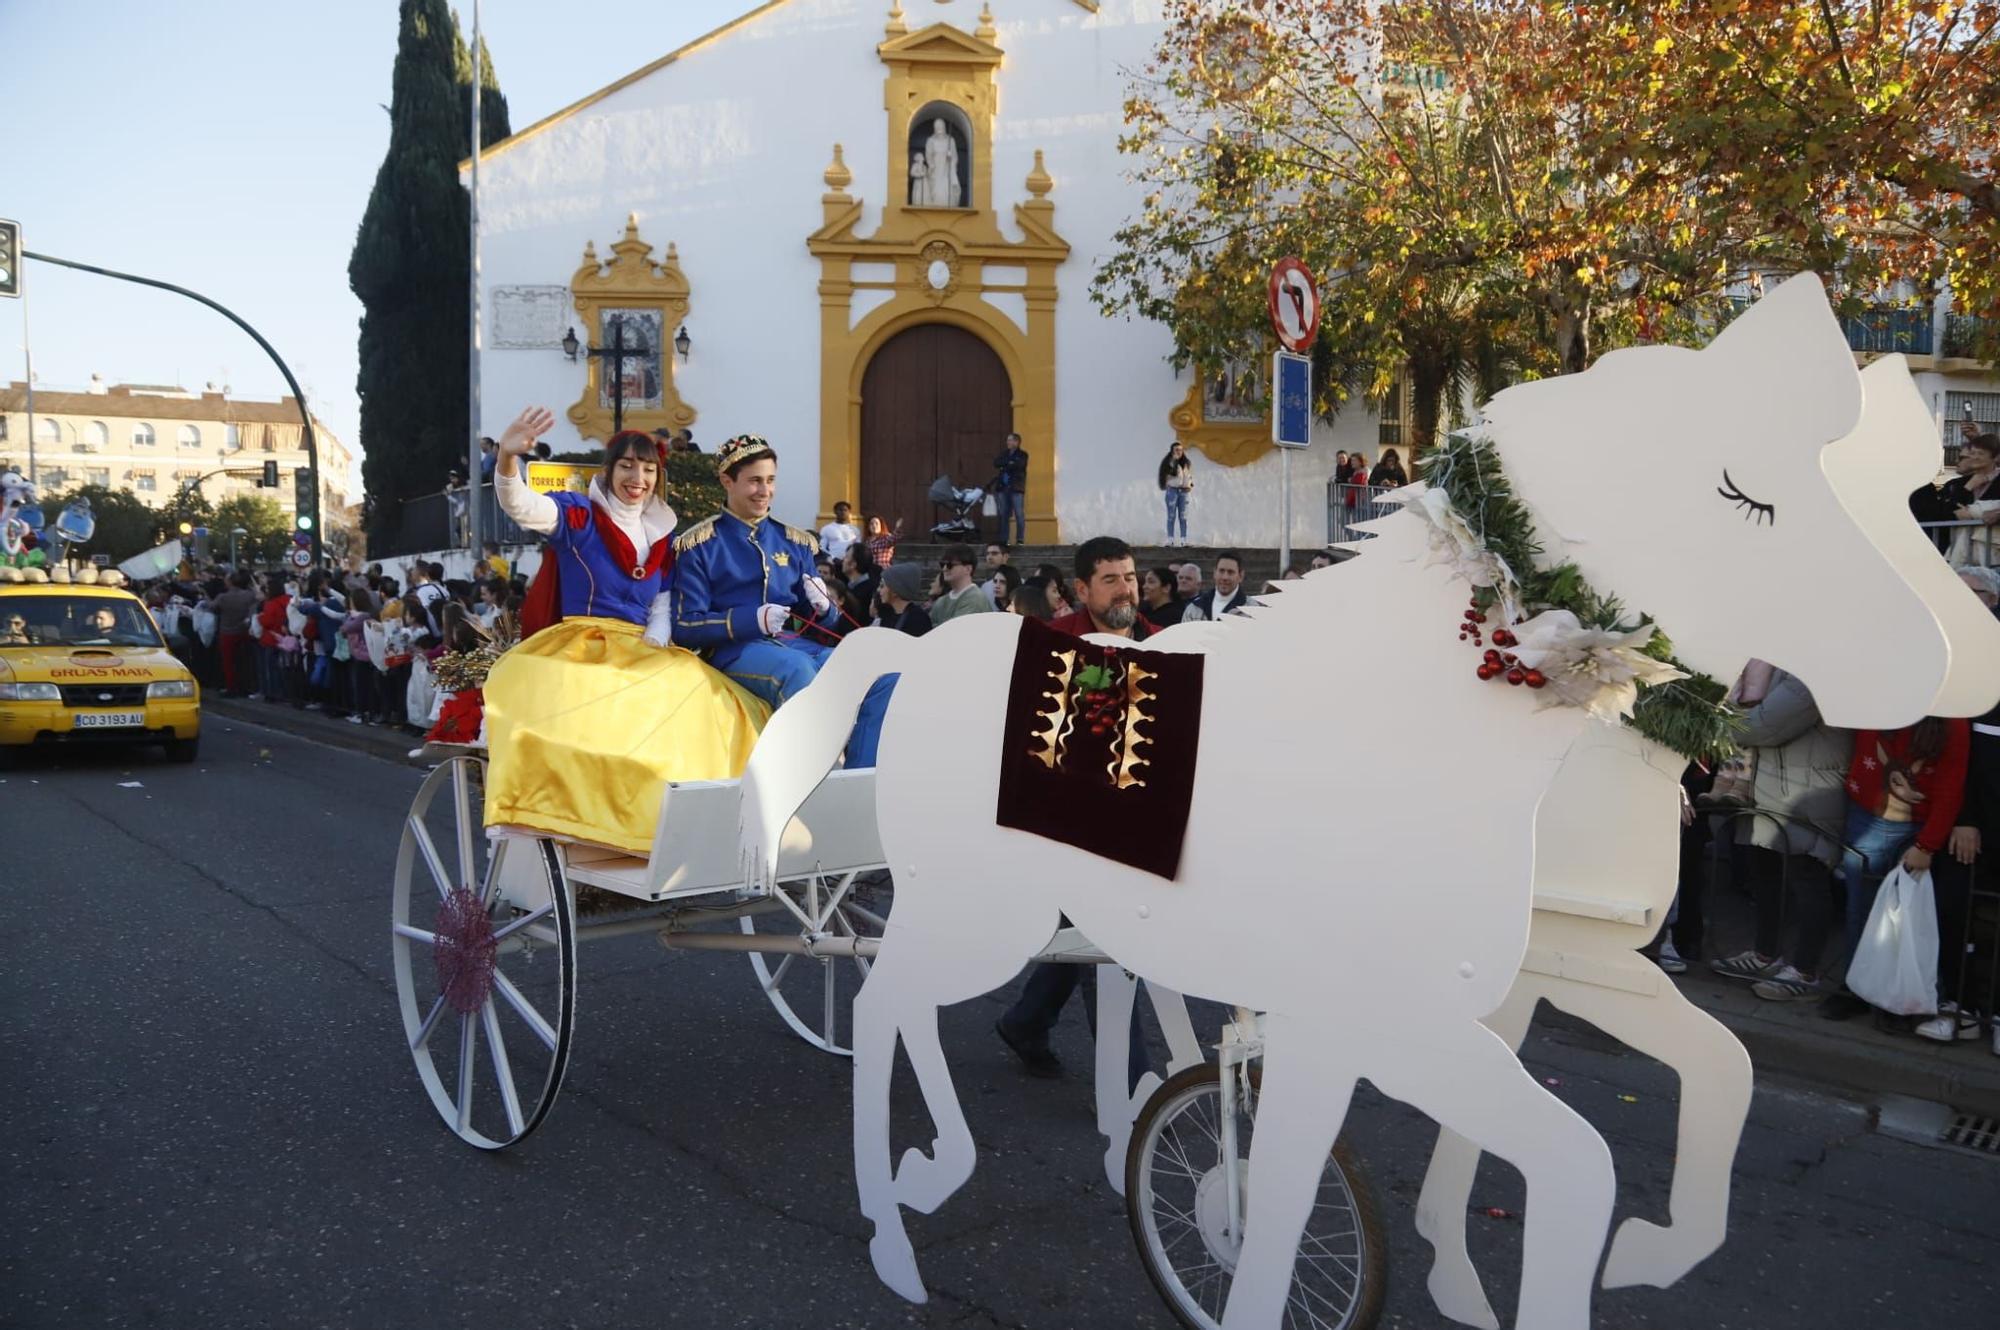 La Cabalgata de los Reyes Magos de Córdoba en todo su esplendor